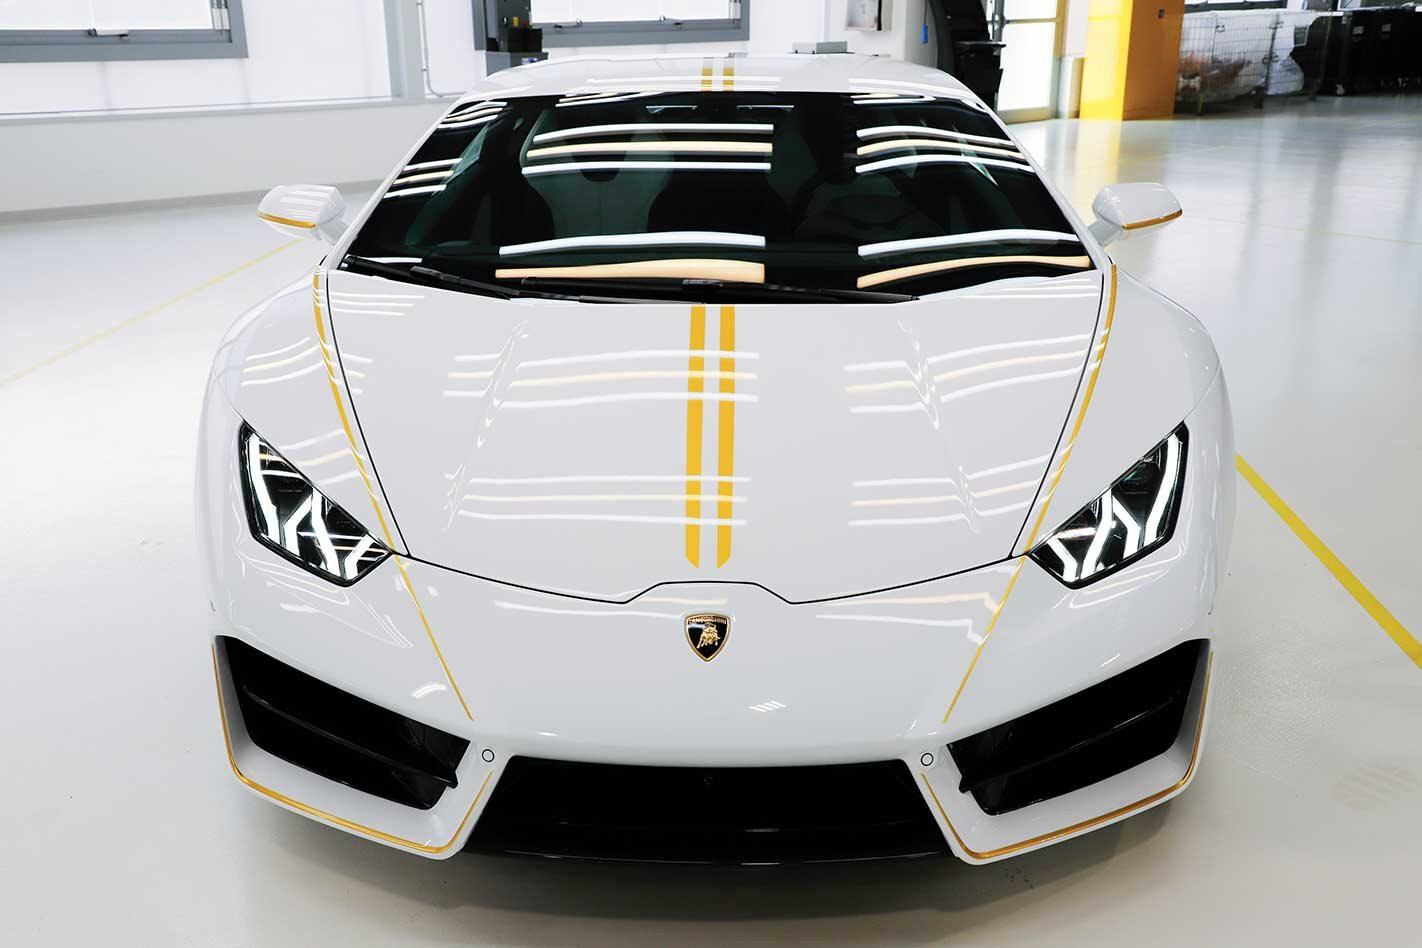 Begrænsninger længes efter Overskyet Pope's Lamborghini Huracán heads up Sotheby's auction